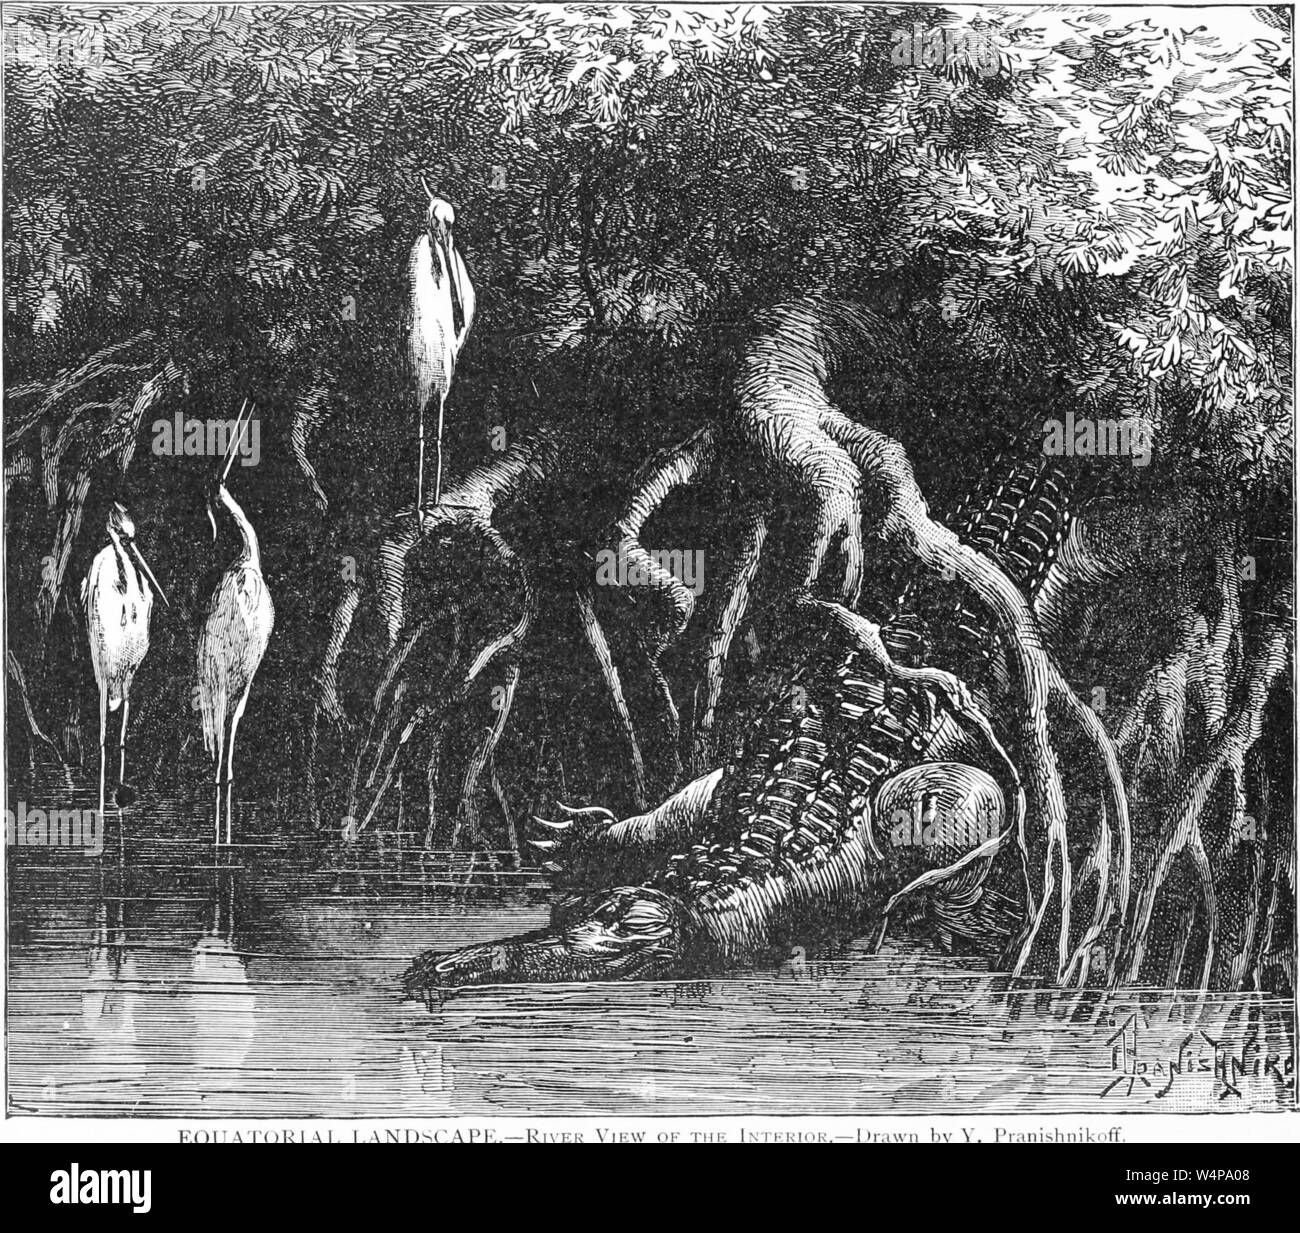 Dessin gravé des animaux sauvages dans la forêt, de la région, du livre 'Ridpath's histoire universelle de l' de John Clark Ridpath, 1897. Avec la permission de Internet Archive. () Banque D'Images